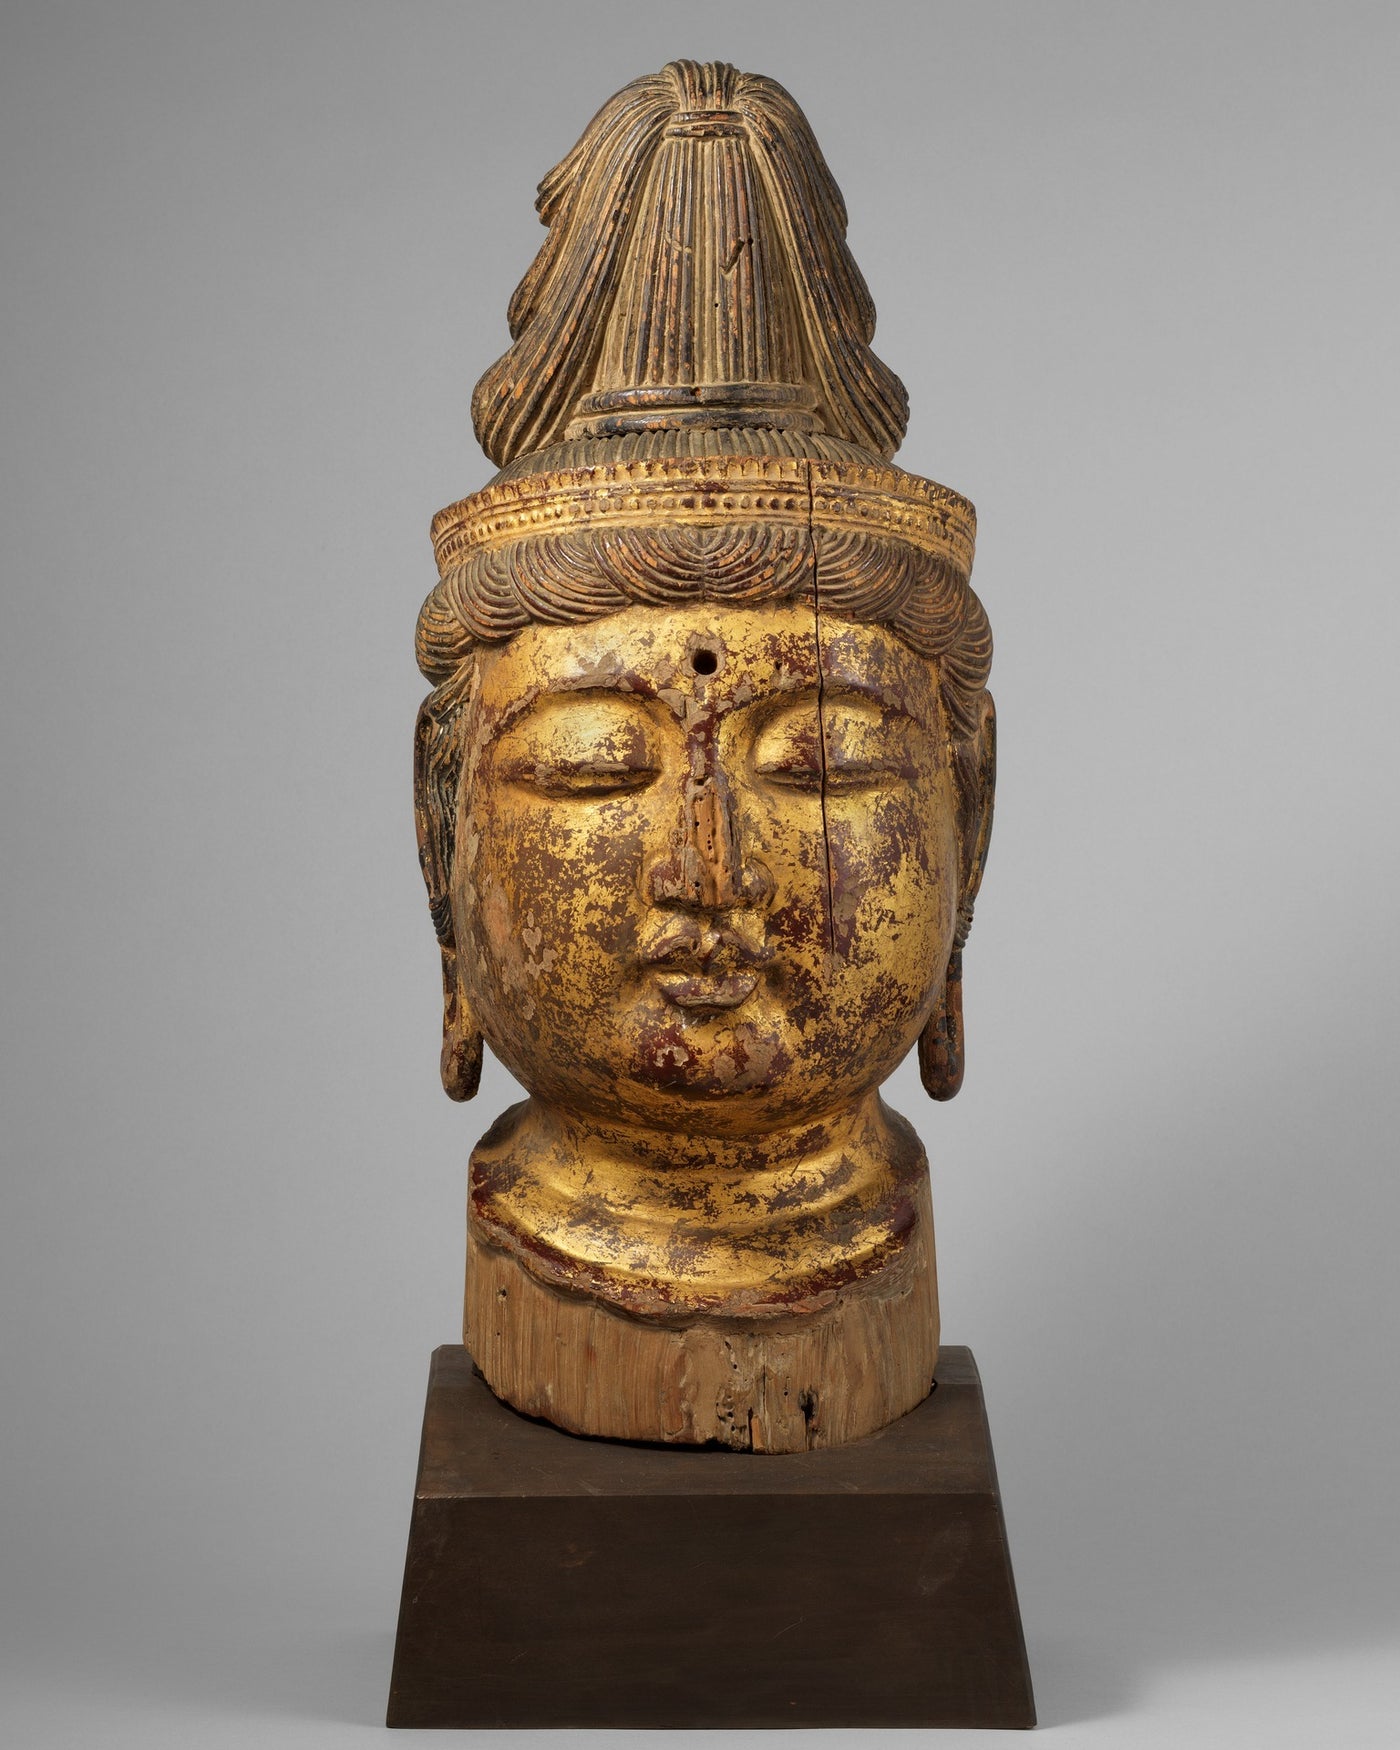 平安木仏頭 A Wood Buddha Head from 8 to 12 centuries in Japan